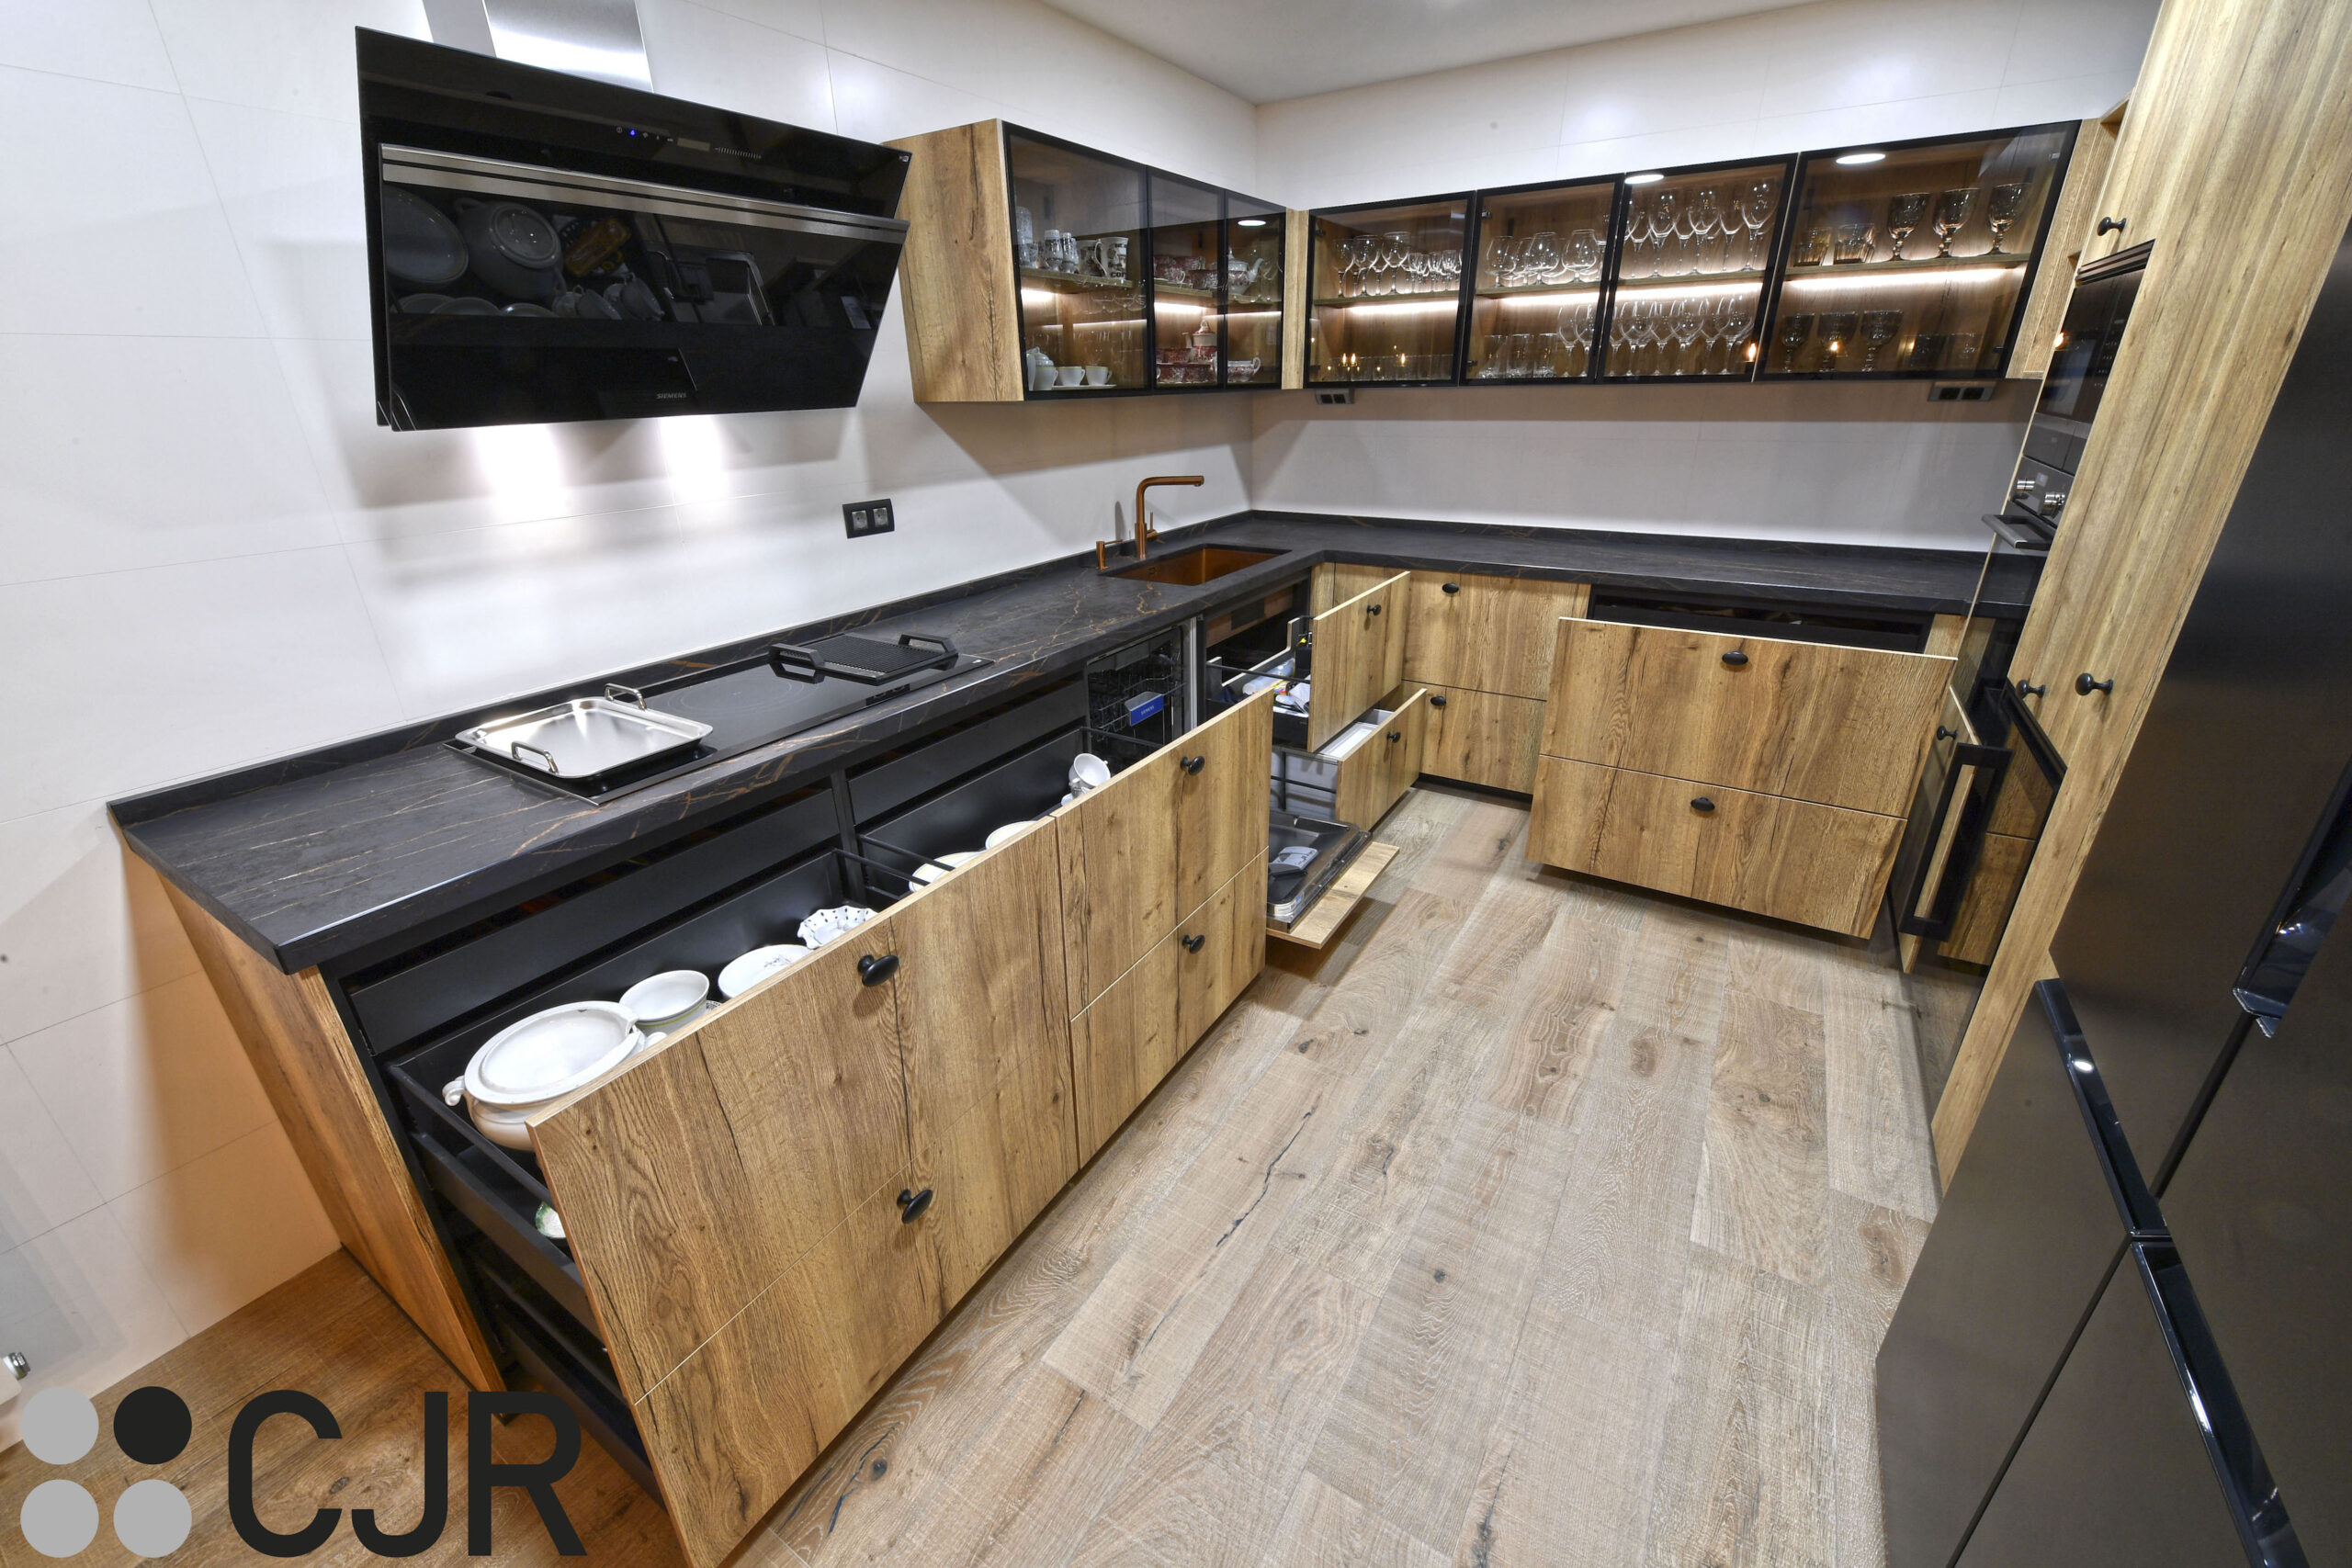 almacenamiento en cocina abierta en madera y negro cocinas cjr